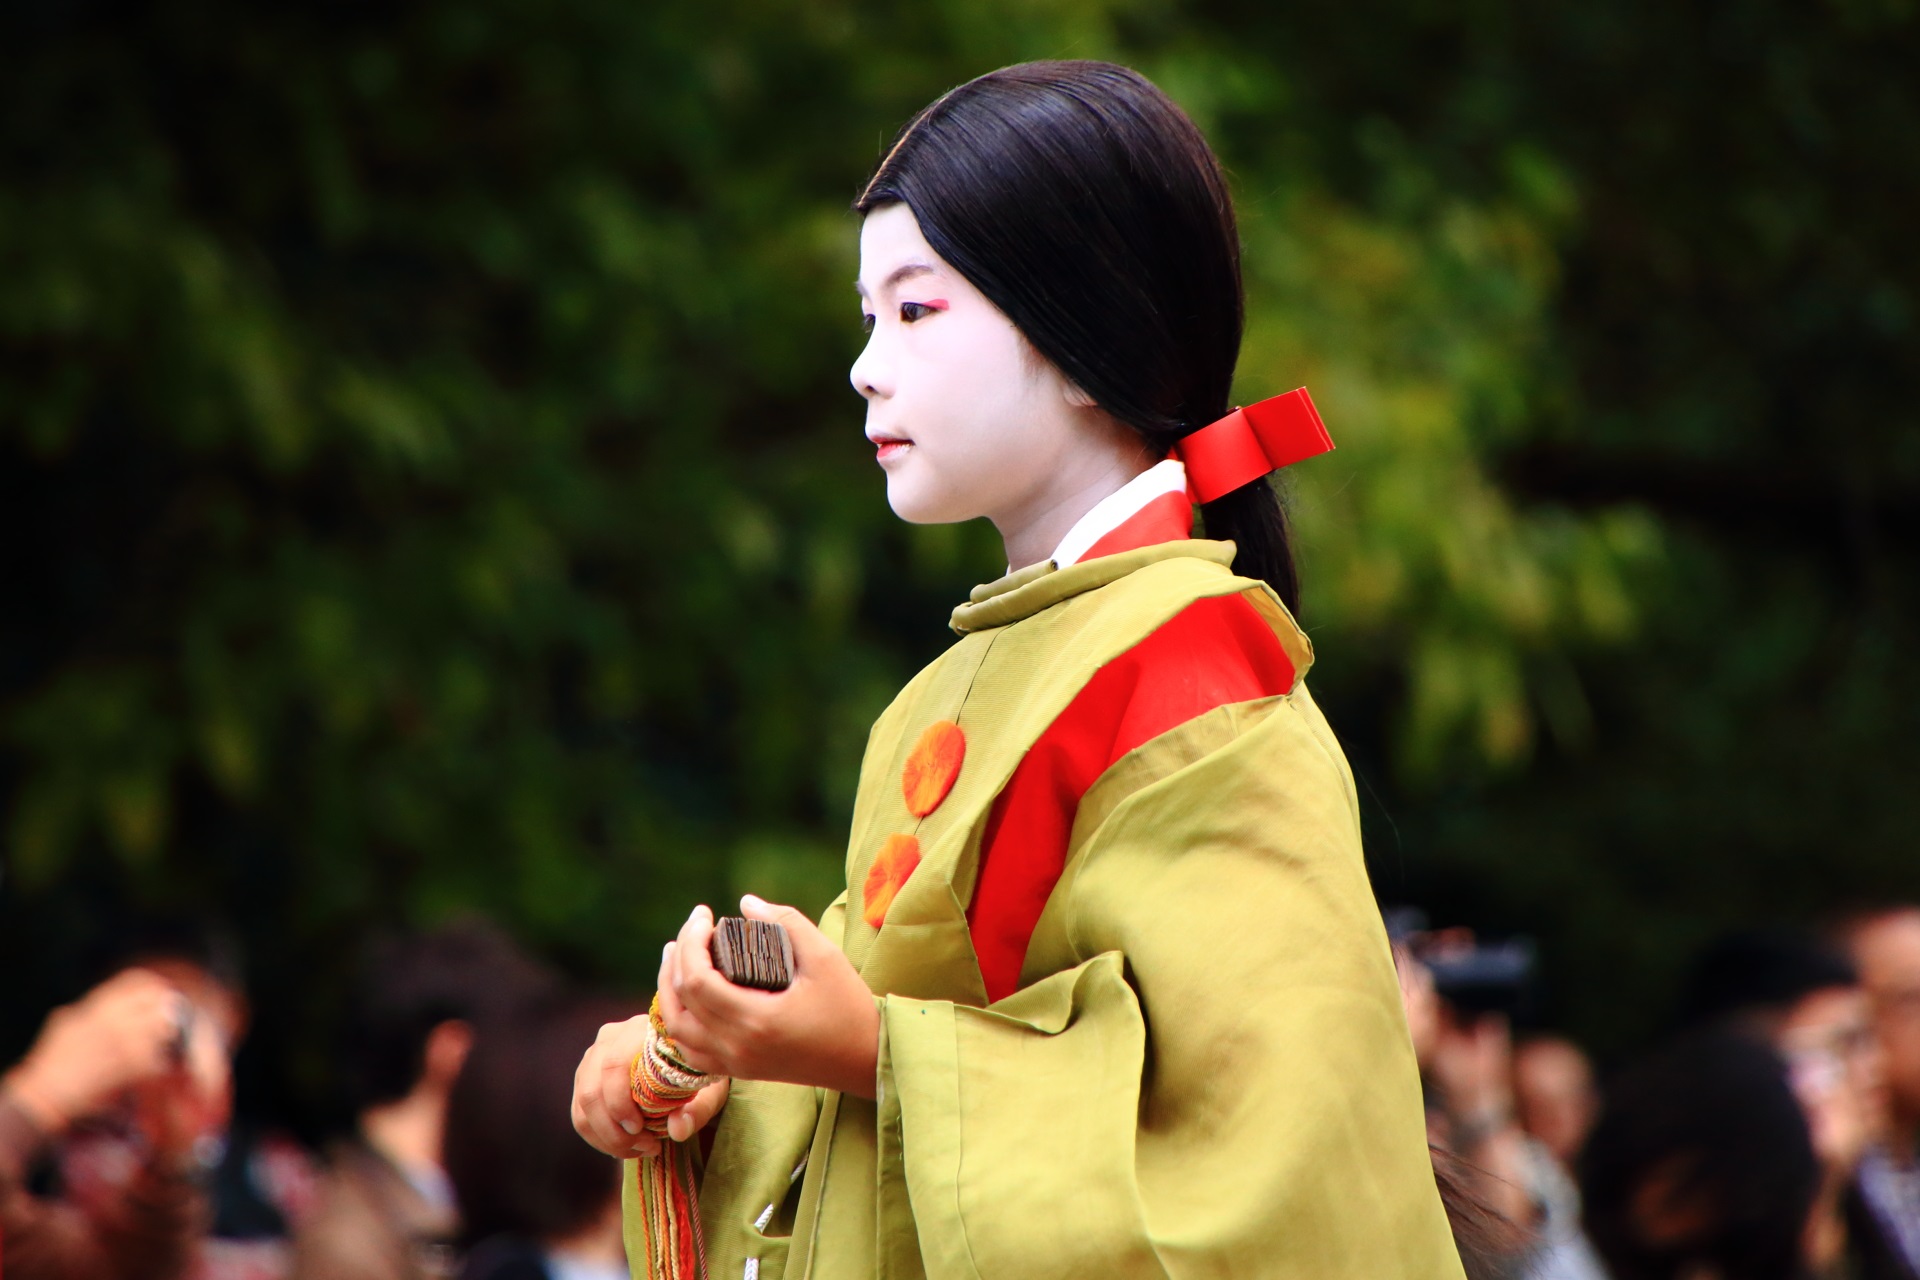 立ち居姿 綺麗 行列 時代祭 鎌倉時代